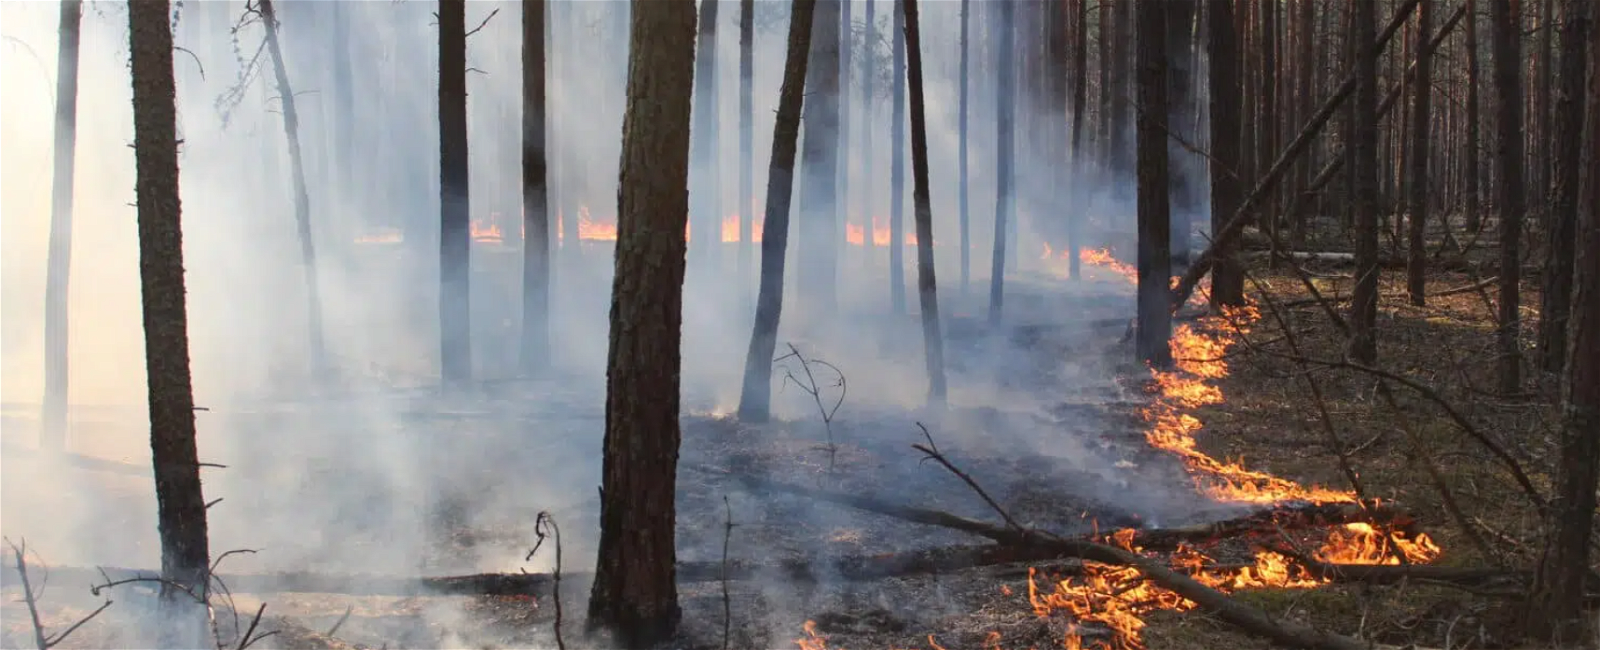 Destroyed Forest in Ukraine